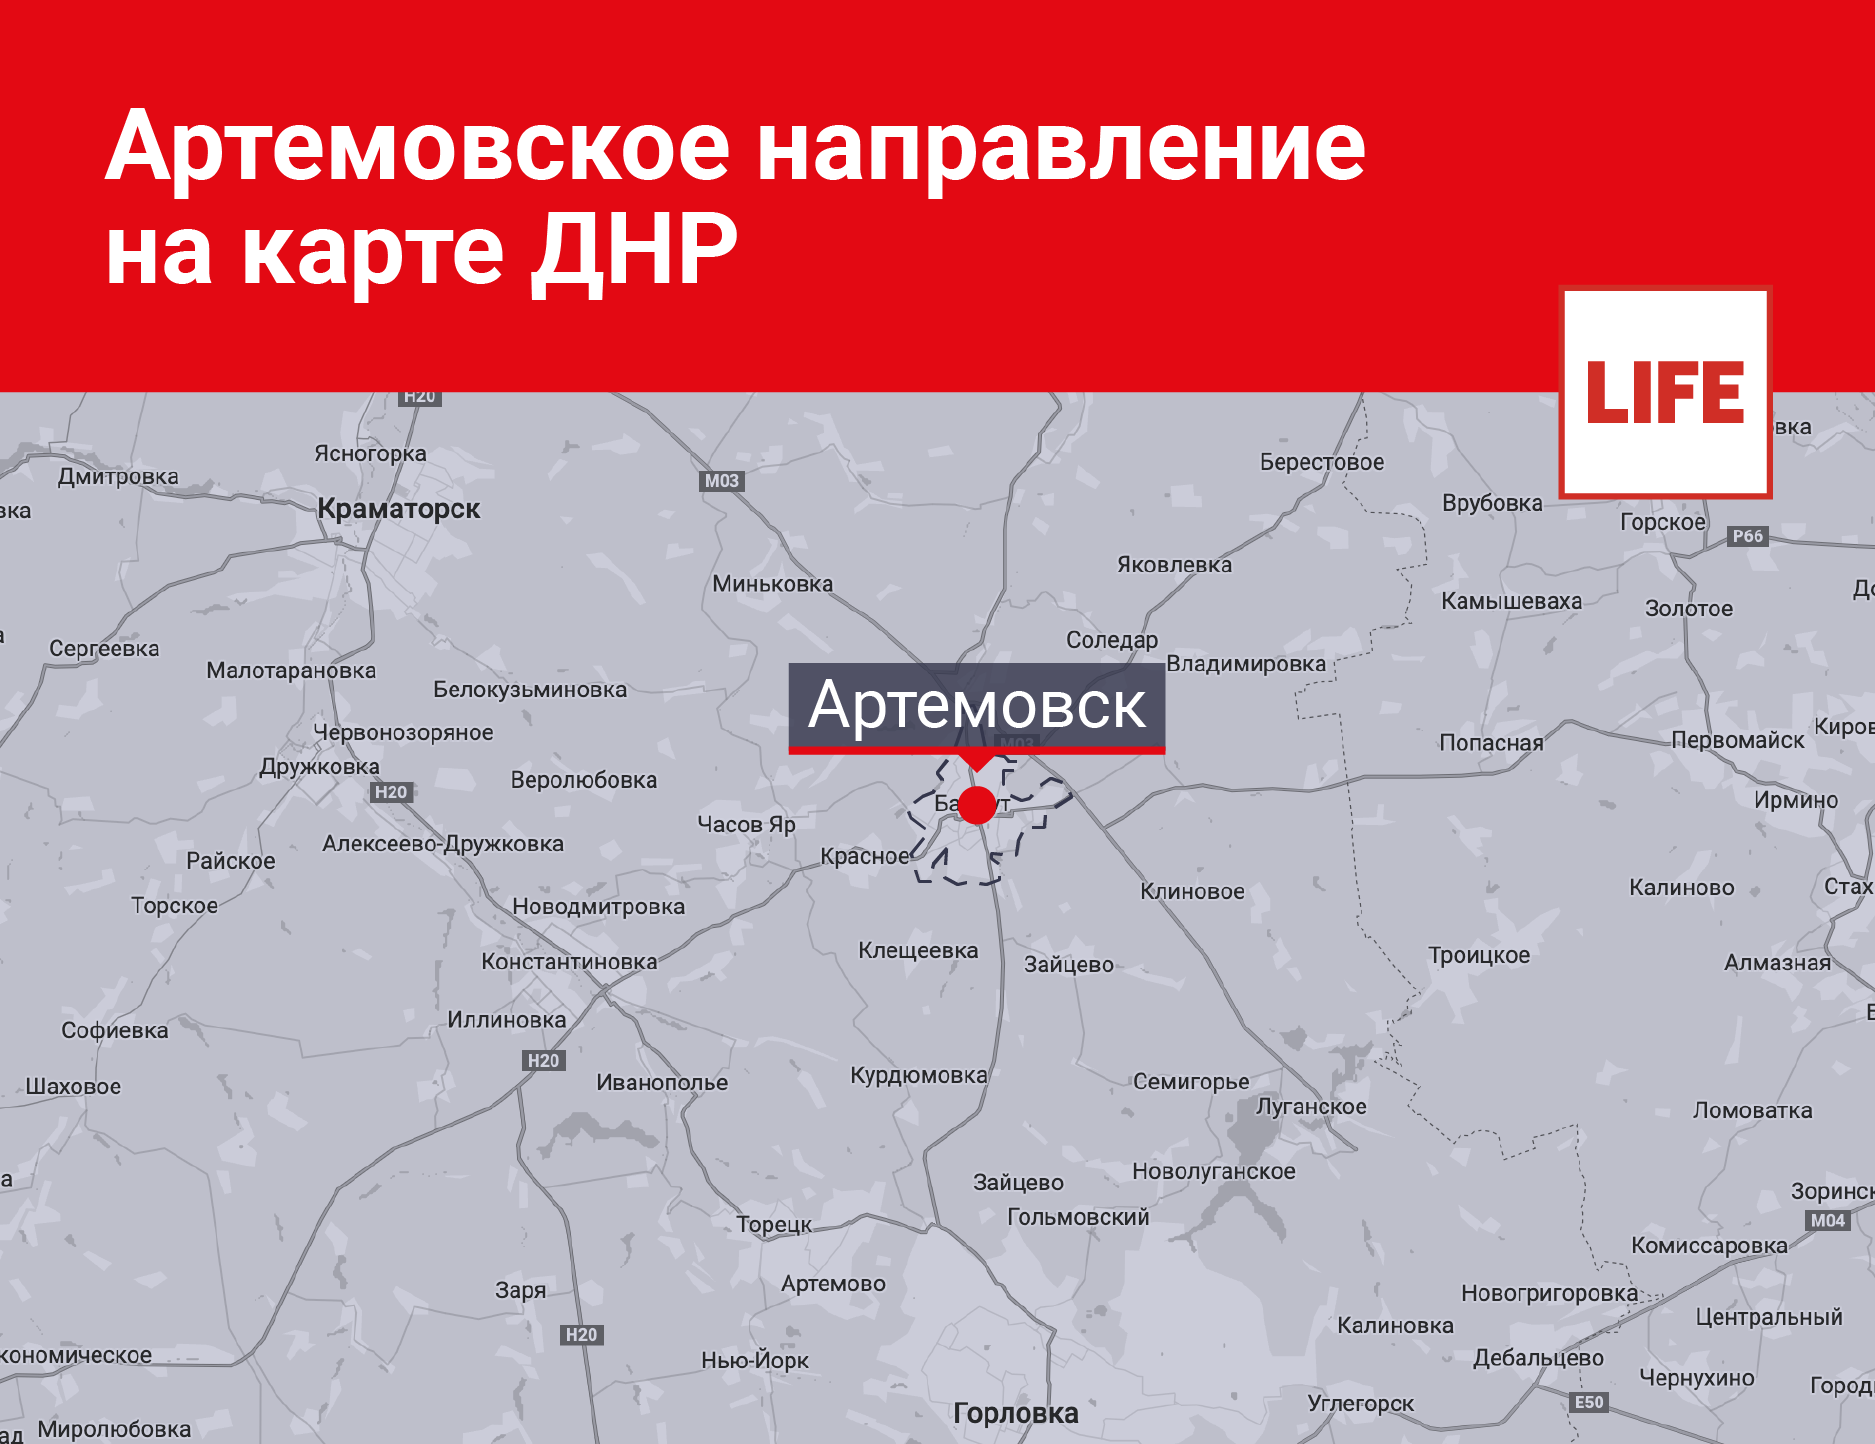 Артёмовское направление на карте ДНР. Инфографика © LIFE